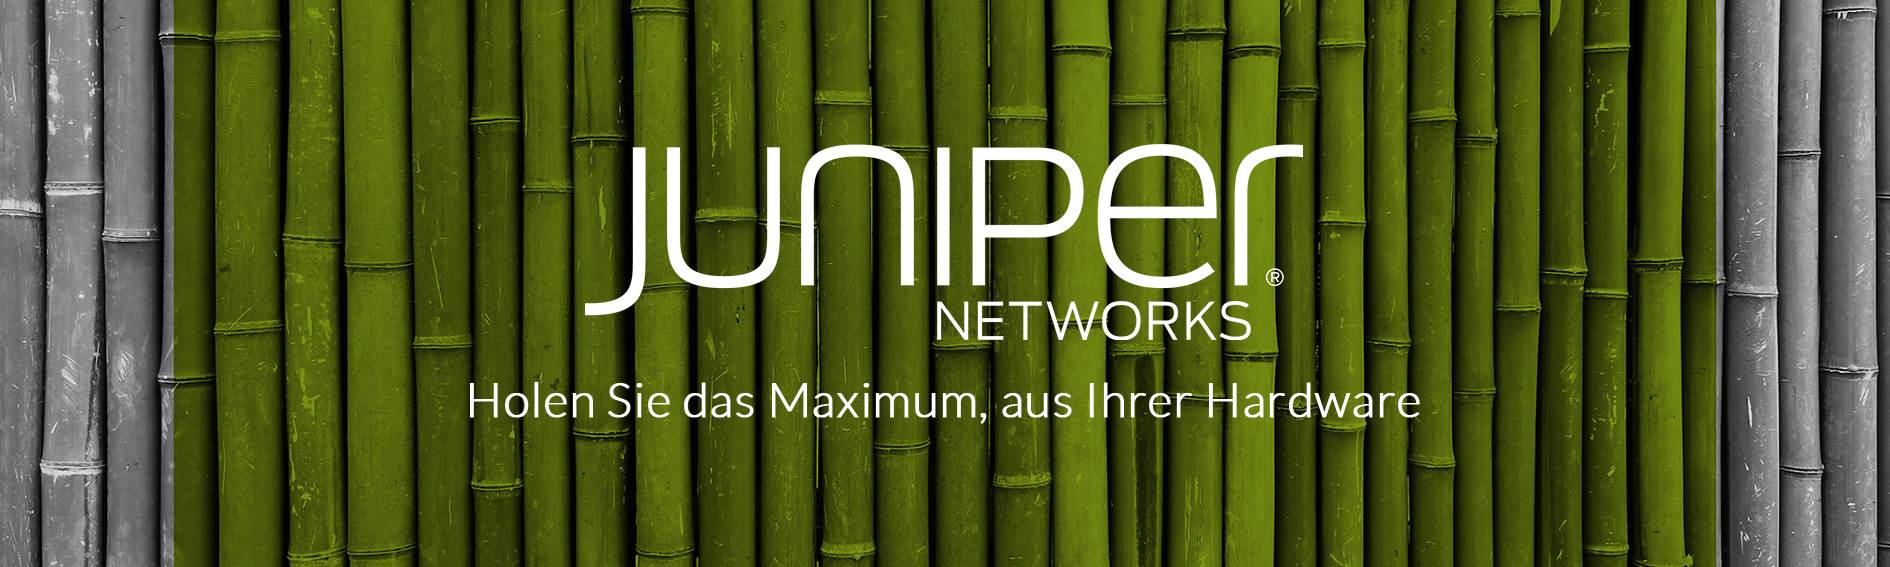 Juniper Networks Logo mit Text auf Bambus Hintergrund